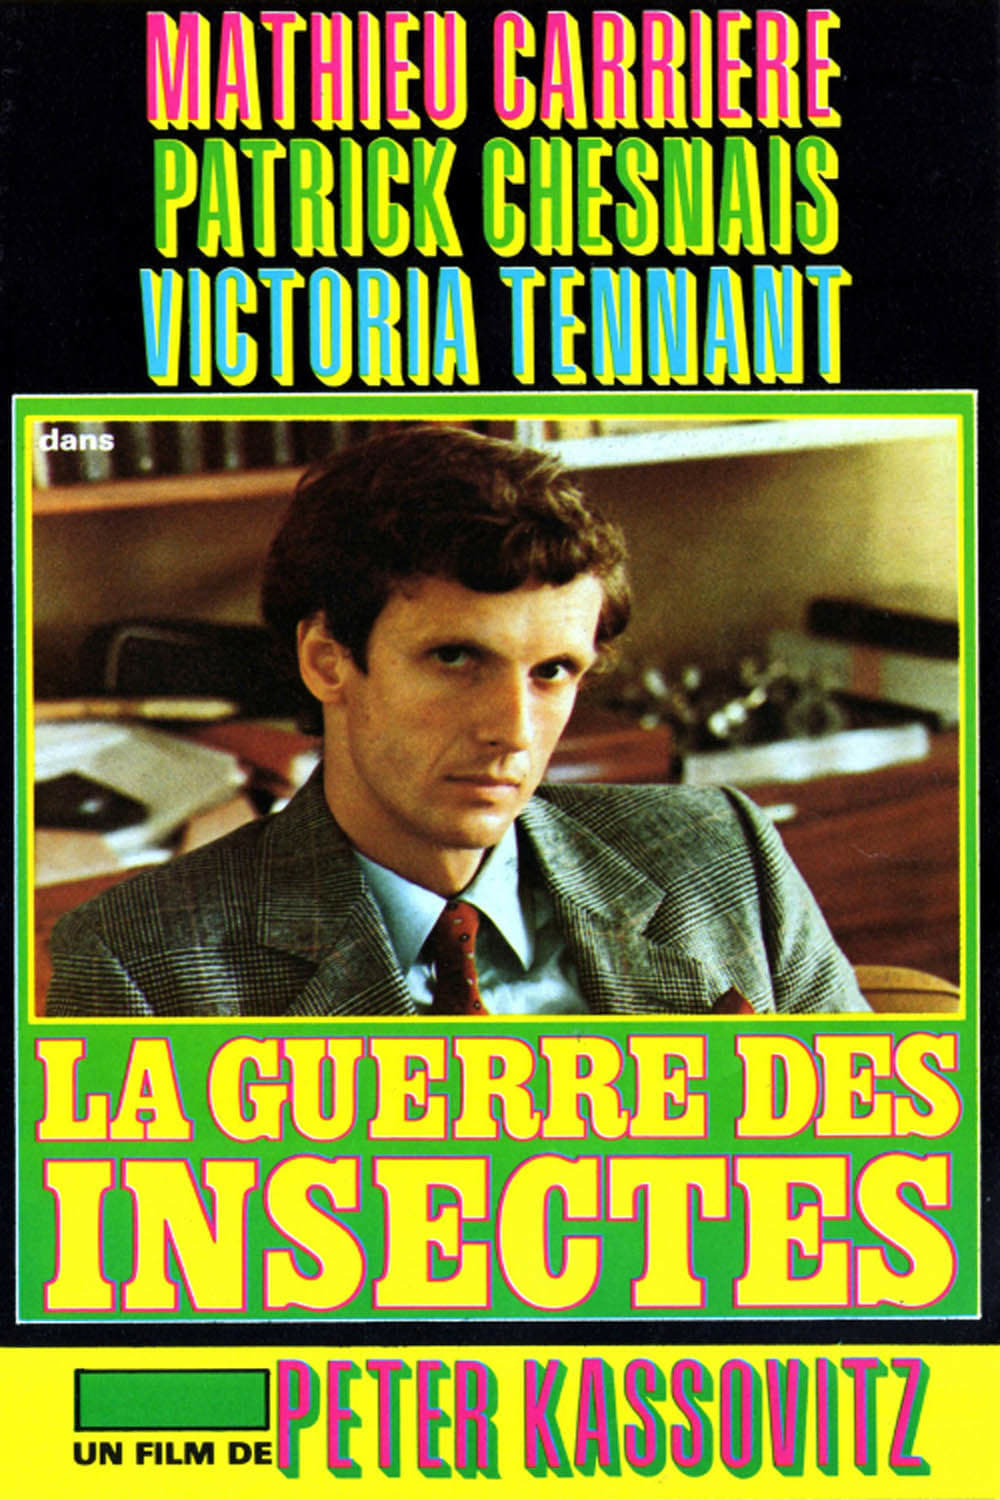 La Guerre des insectes (1981)